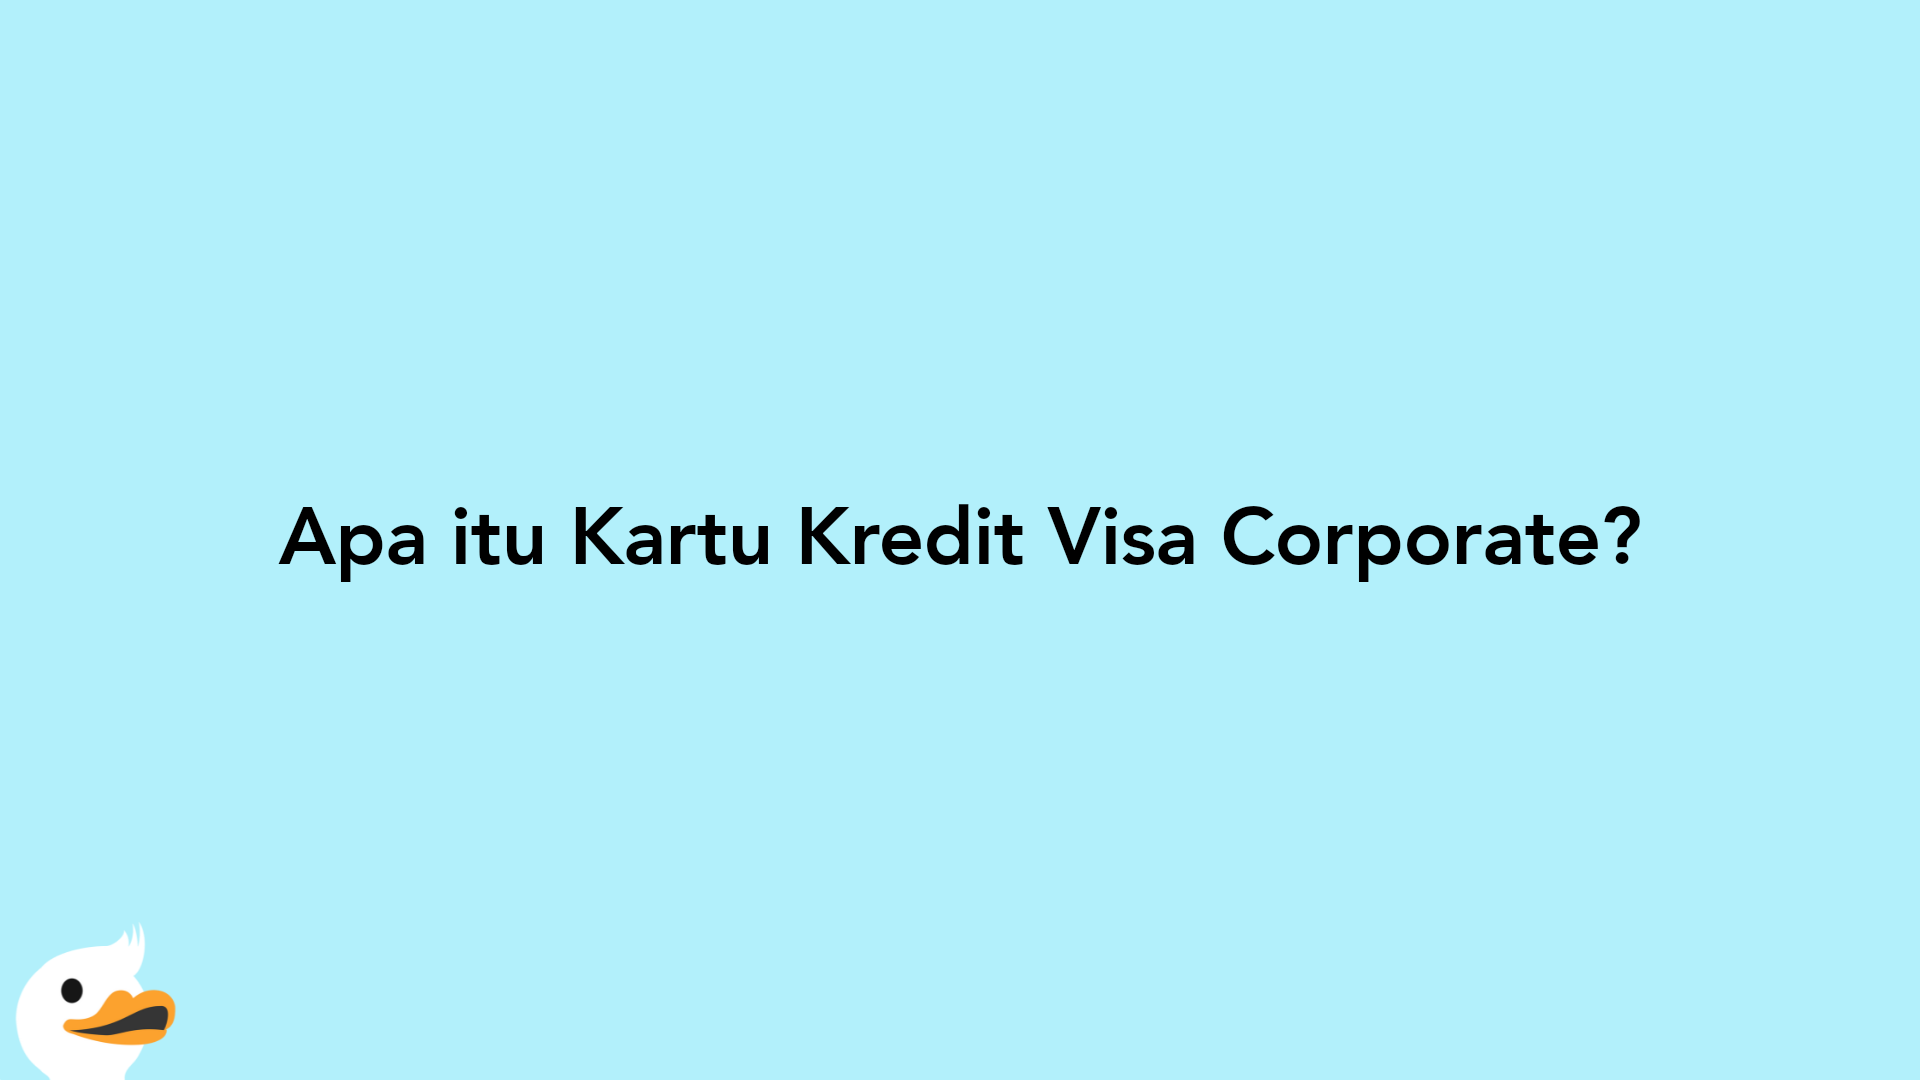 Apa itu Kartu Kredit Visa Corporate?